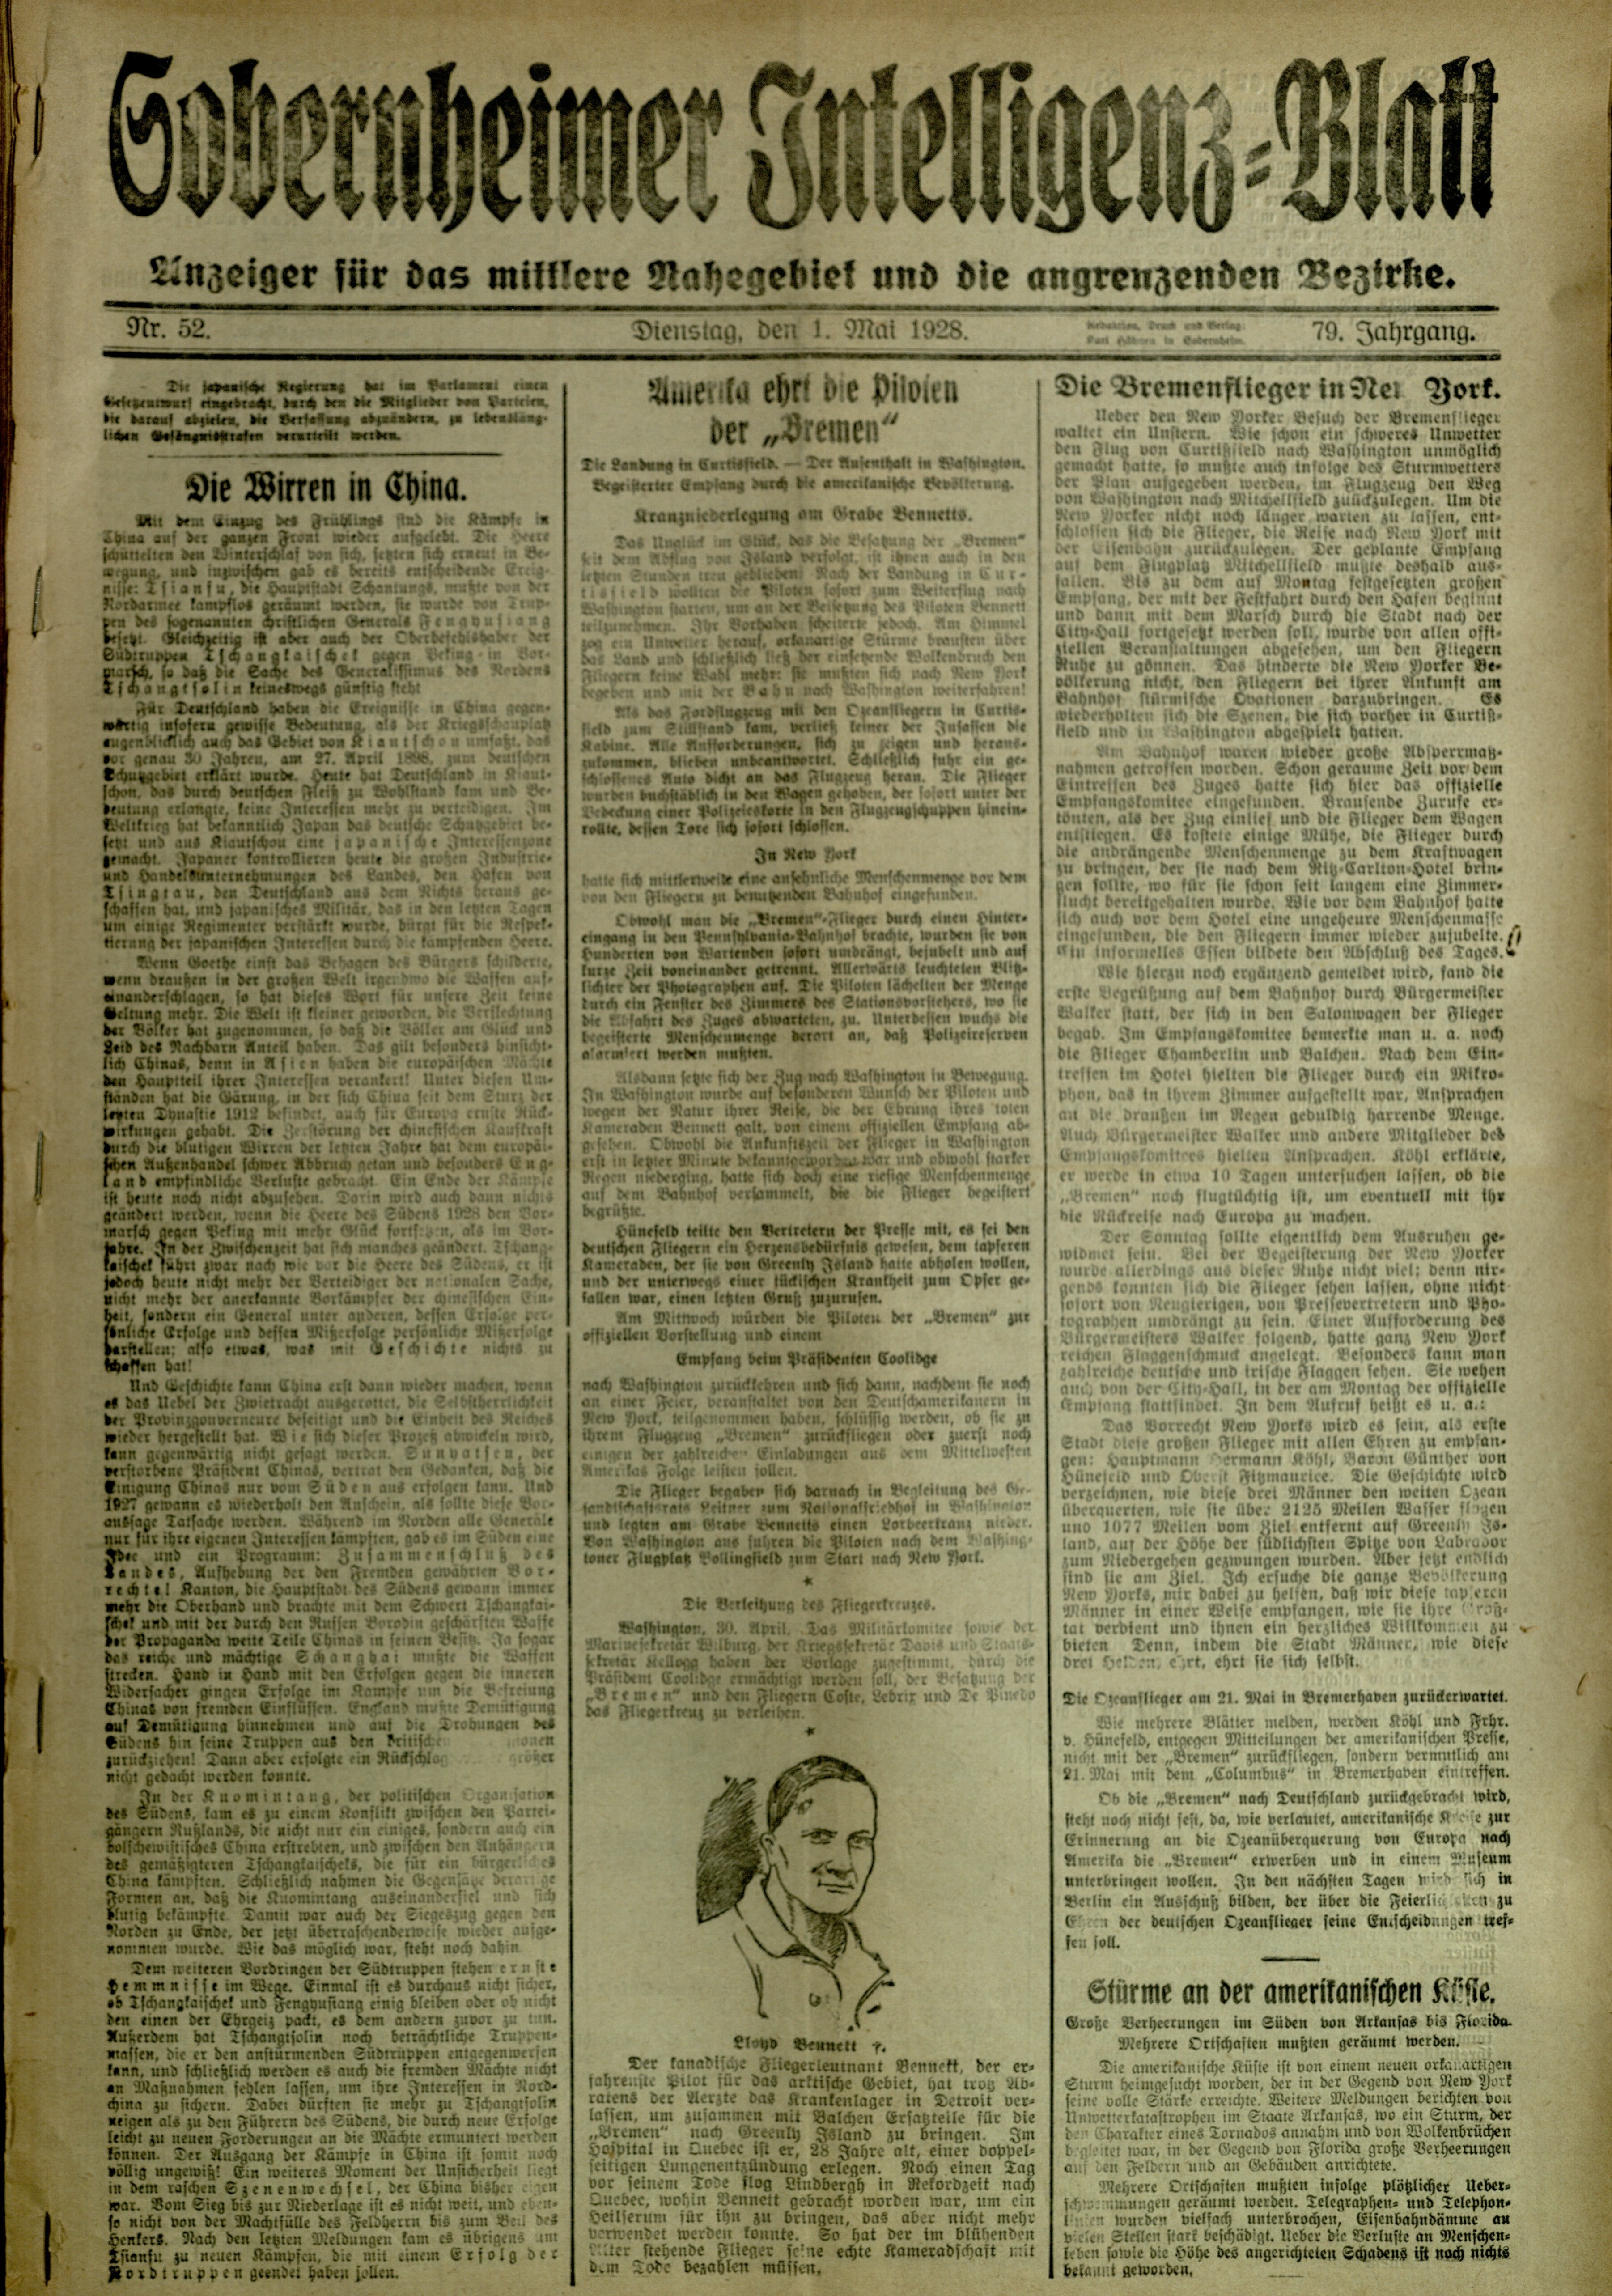 Zeitung: Sobernheimer Intelligenzblatt; Mai 1928, Jg. 79 Nr. 52 (Heimatmuseum Bad Sobernheim CC BY-NC-SA)